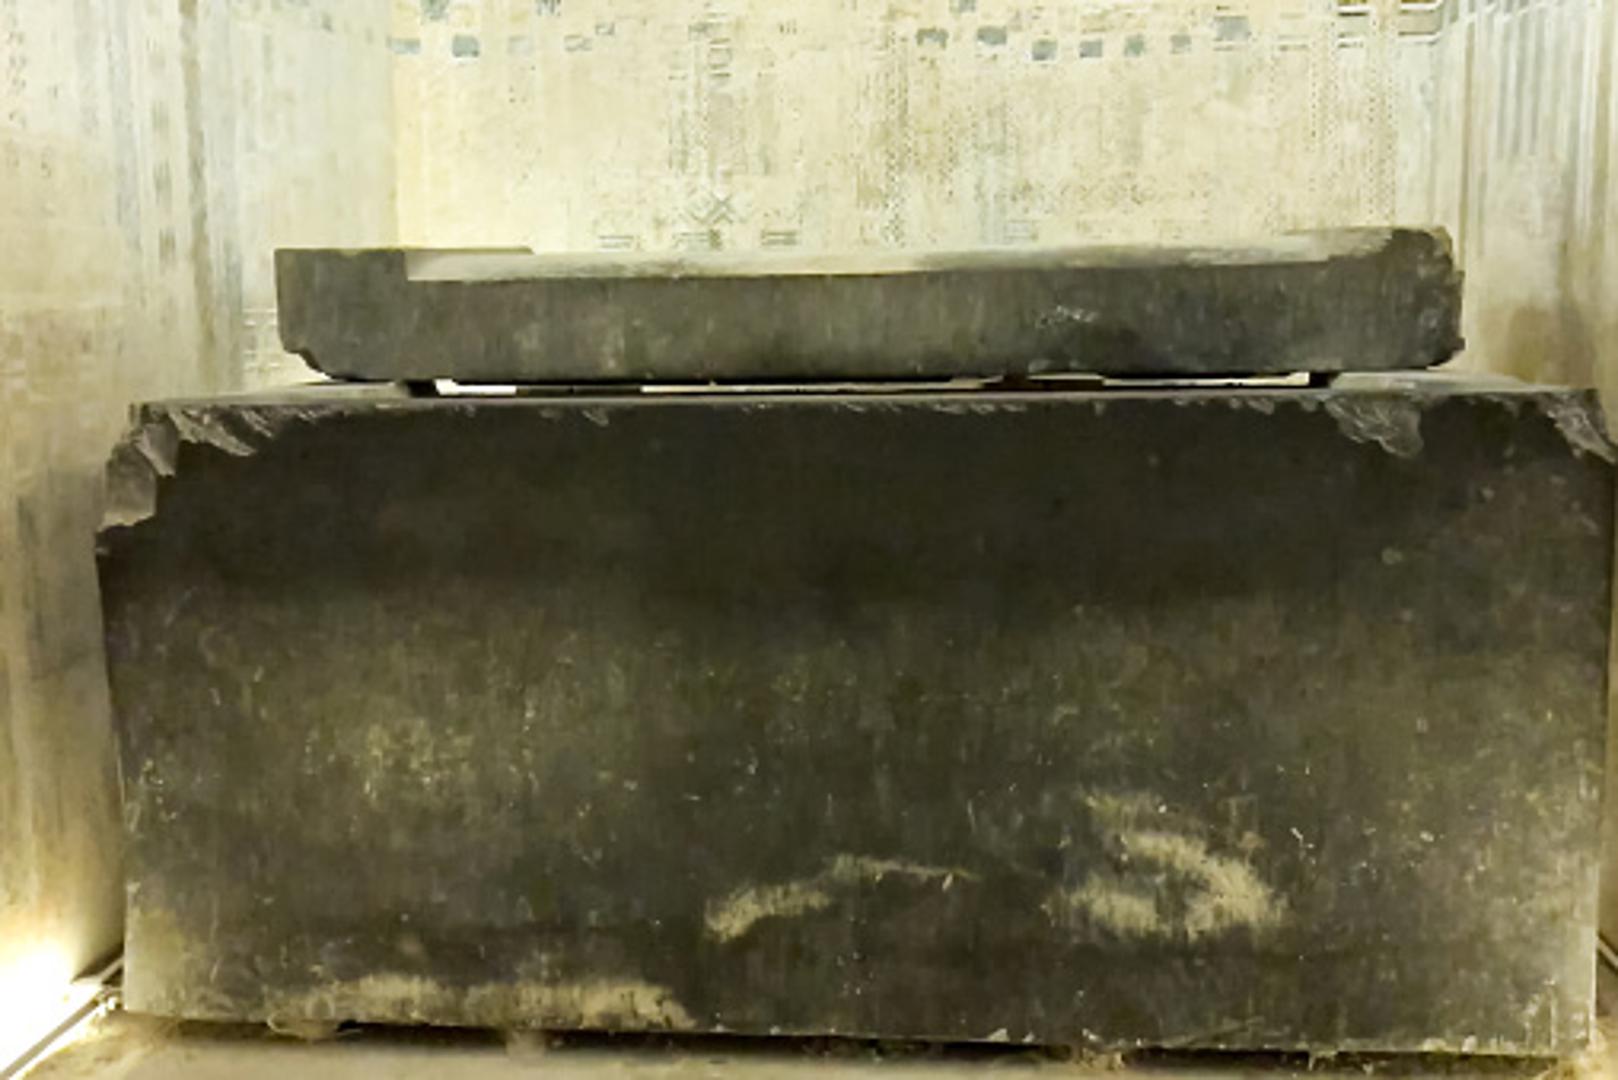 U lipnju su građevinski radnici slučajno pronašli sarkofag u egipatskom gradu Aleksandriji. Znanstvenici su posumnjali da je riječ o nikad pronađenoj grobnici Aleksandra Velikog, no nije bilo tako
